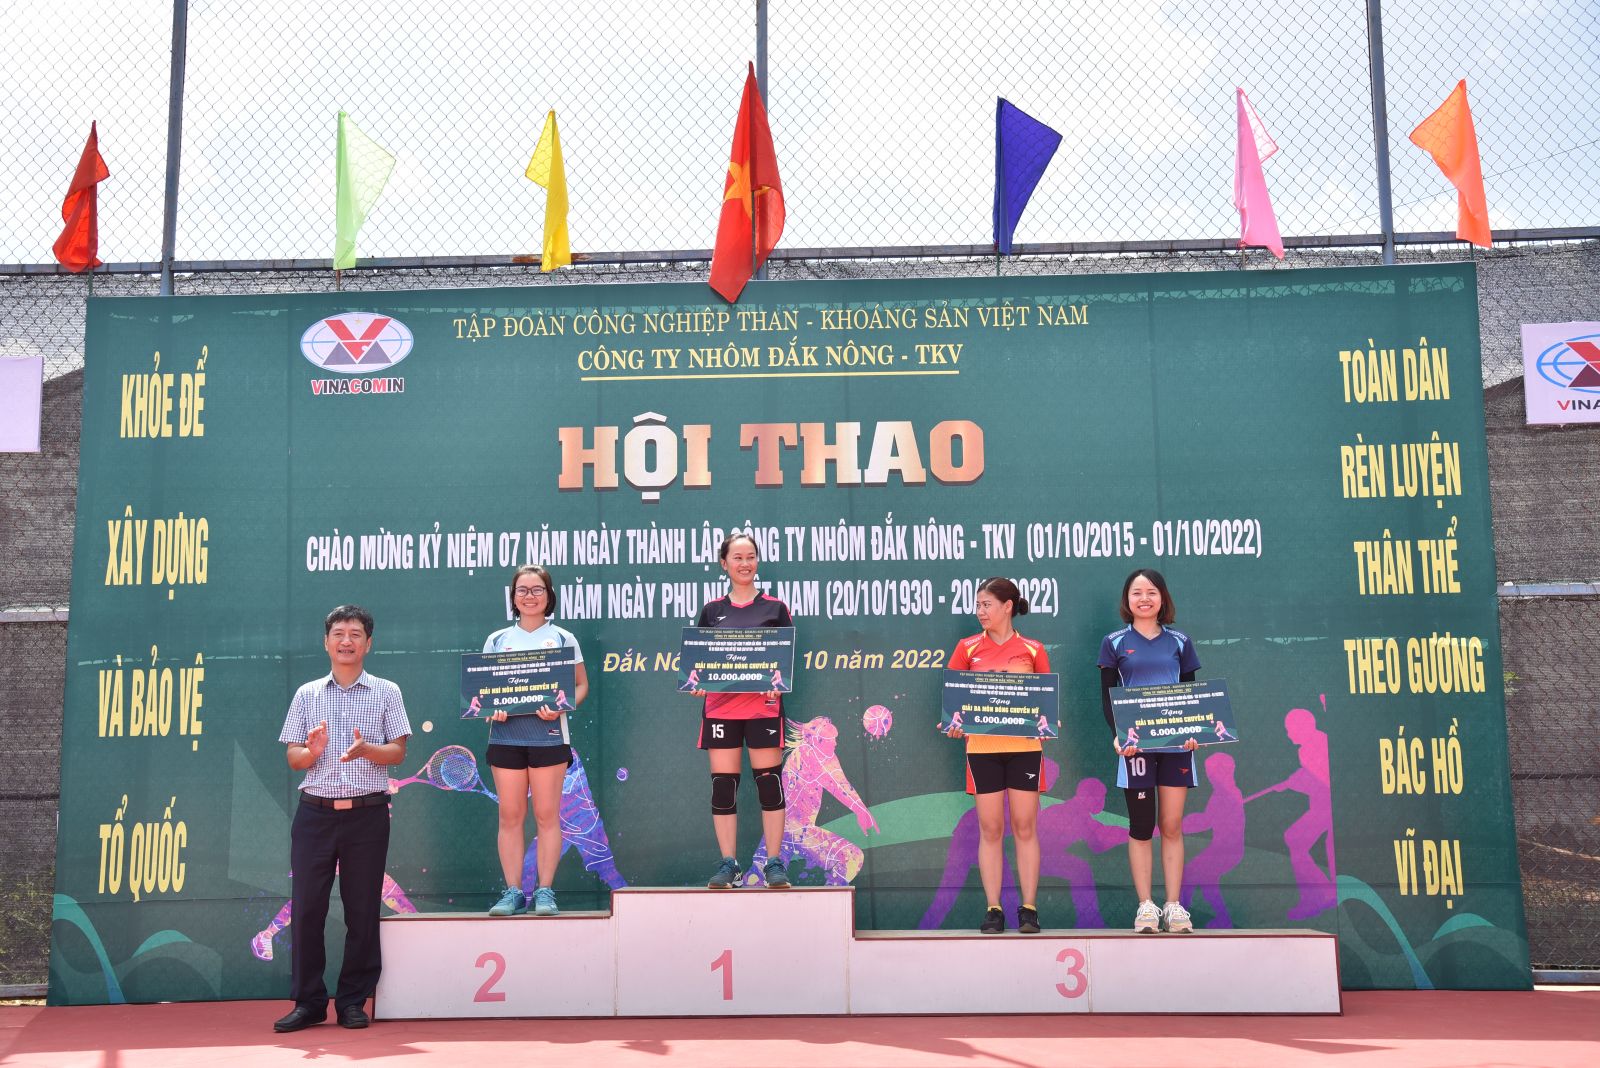 Hội thao chào mừng kỷ niệm 07 năm thành lập Công ty Nhôm Đắk Nông - TKV (01/10/2015 - 01/10/2022)